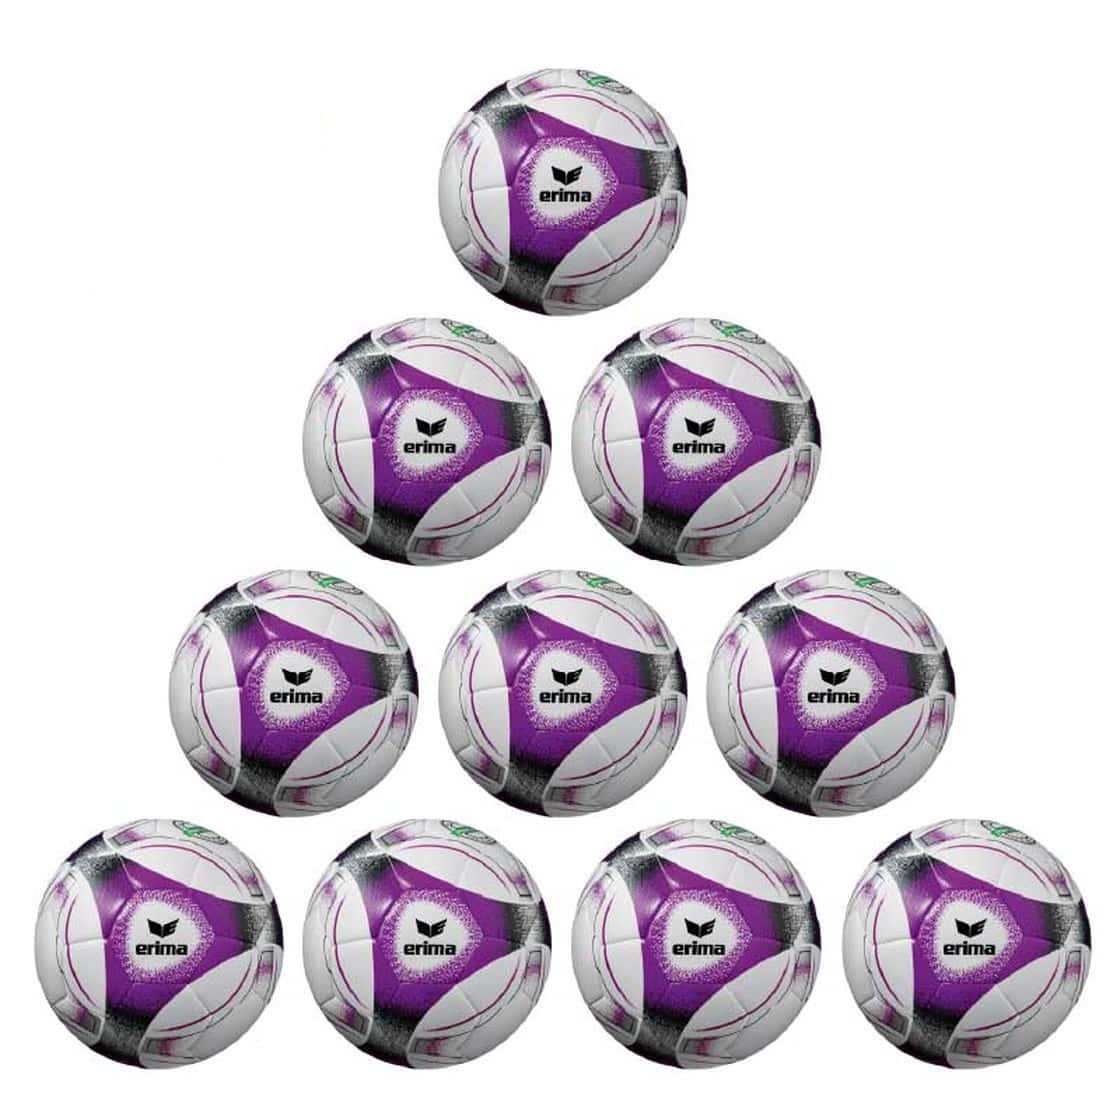 Erima Ballpaket 10x Hybrid Trainingsball Lite 290g violett inkl. Ballsack